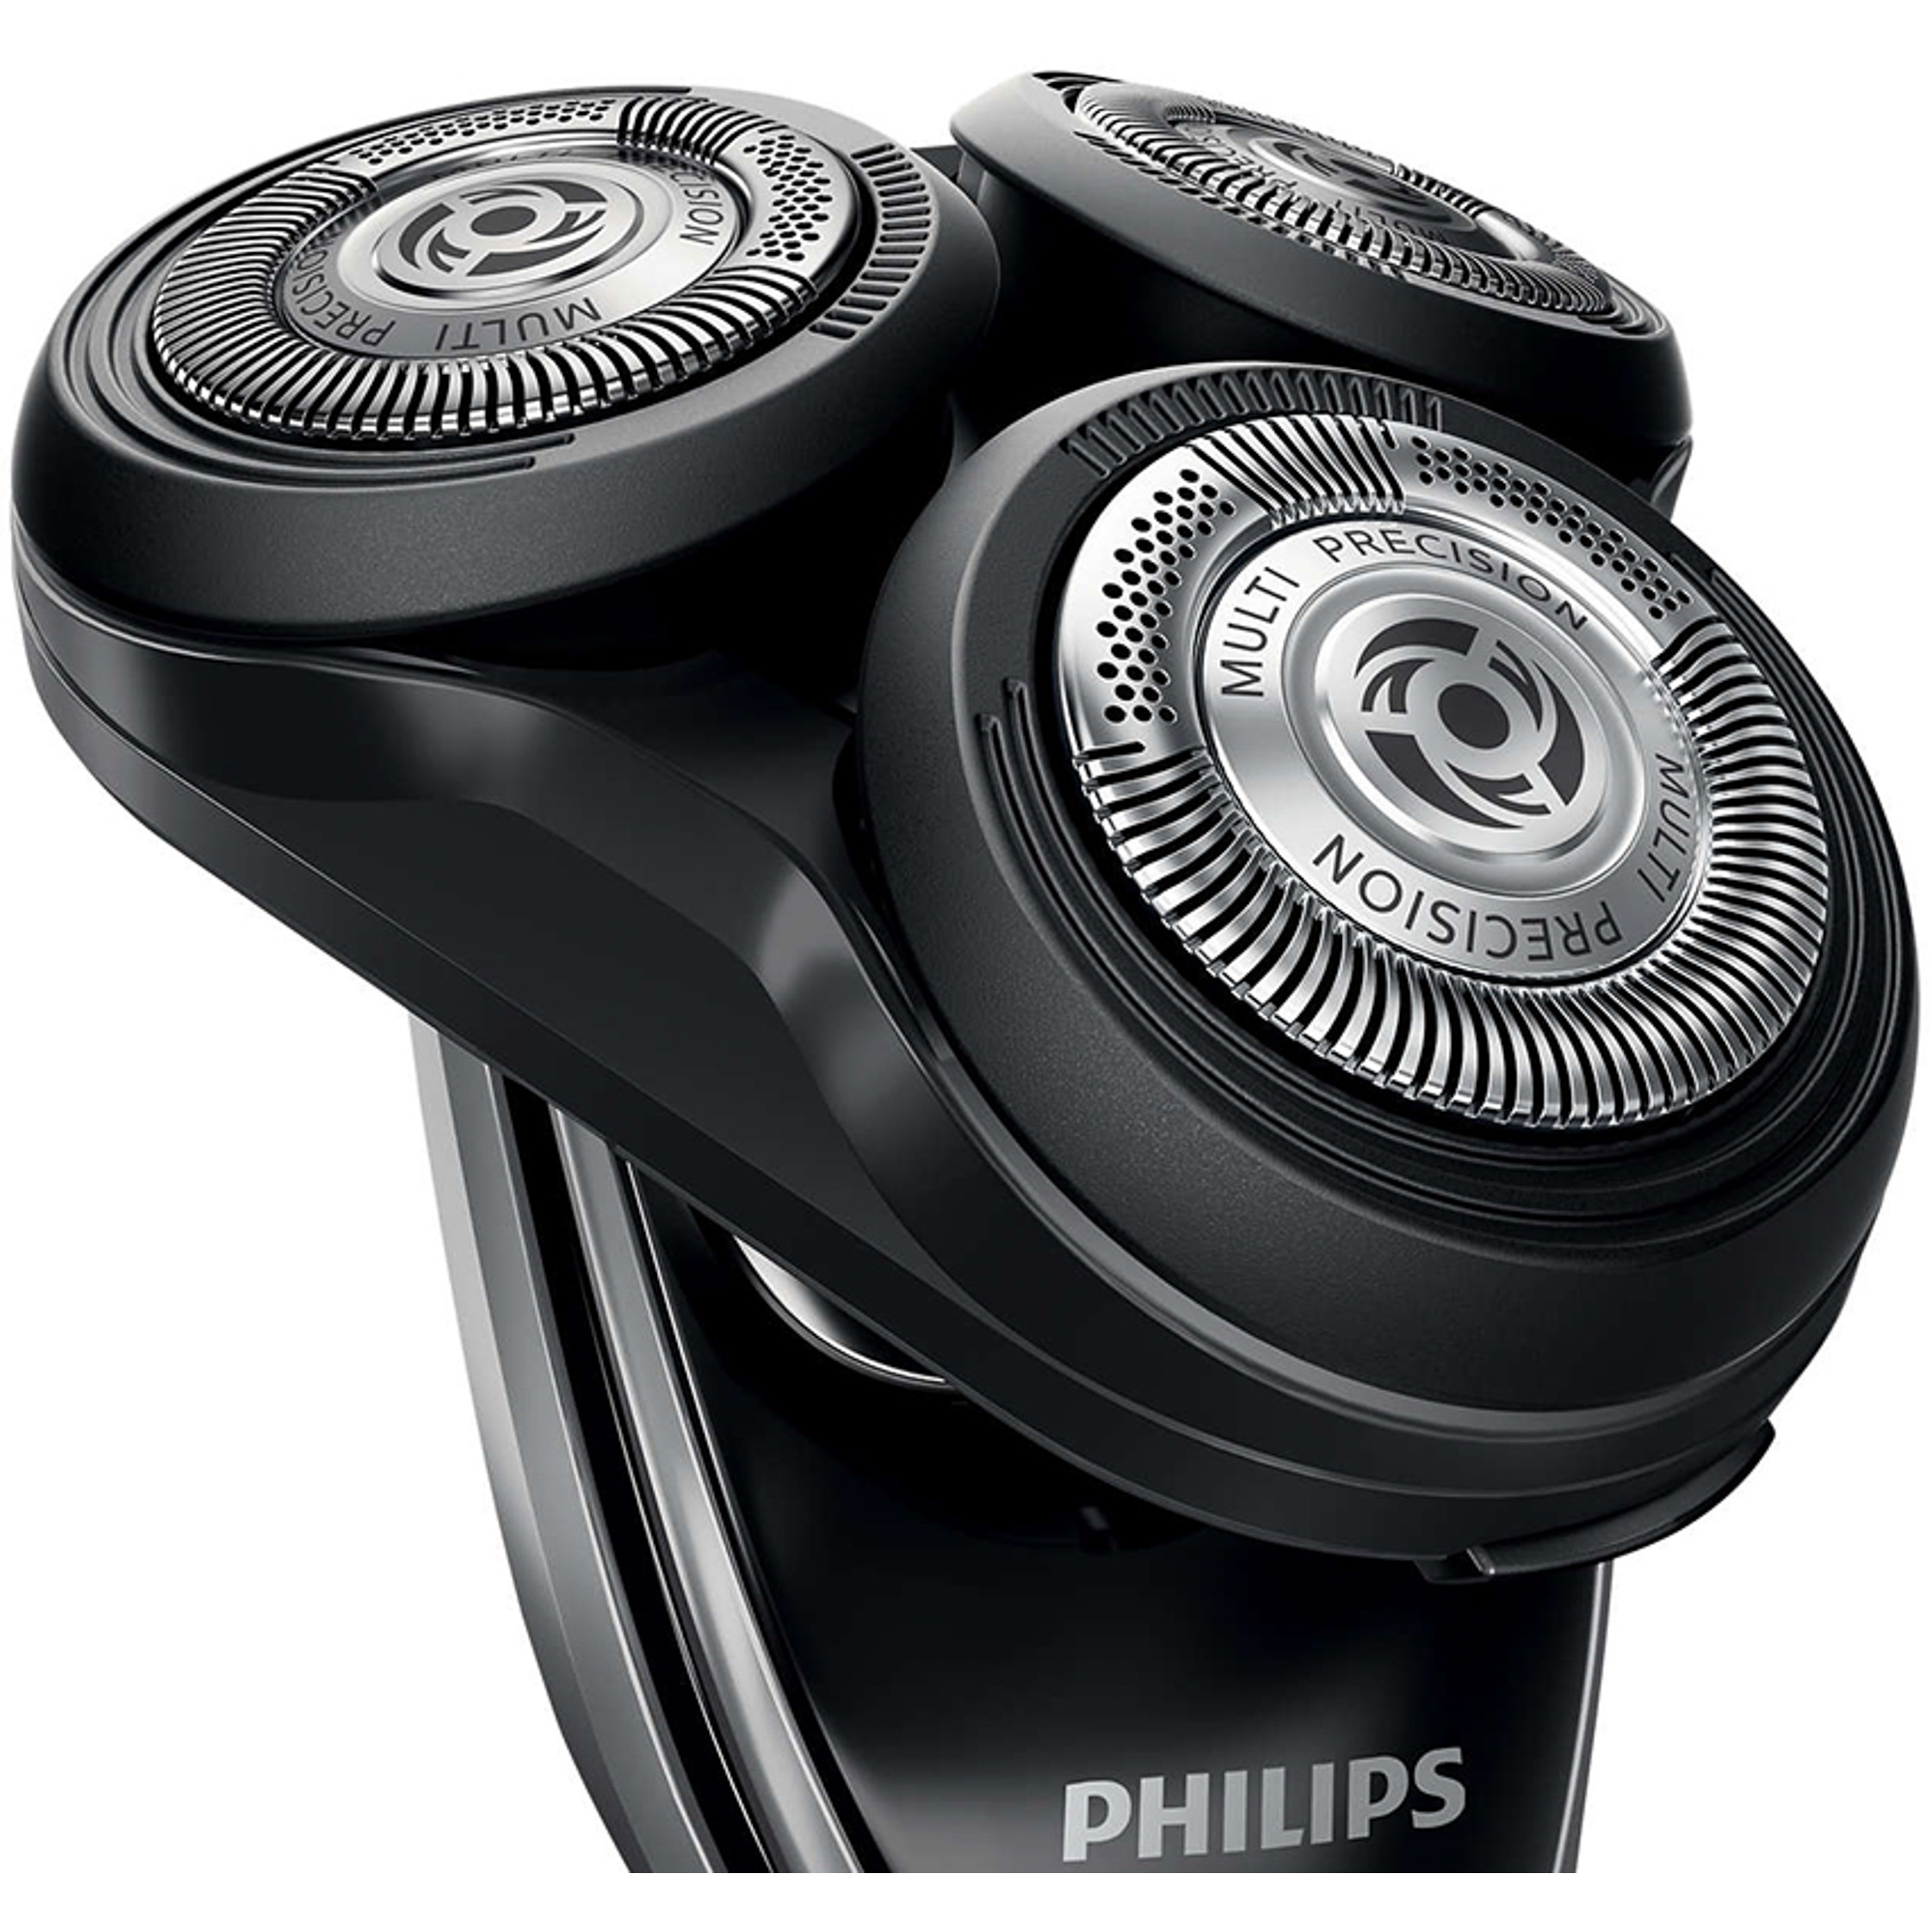 Бритвенные головки Philips SH50/50, цвет серебристый - фото 2